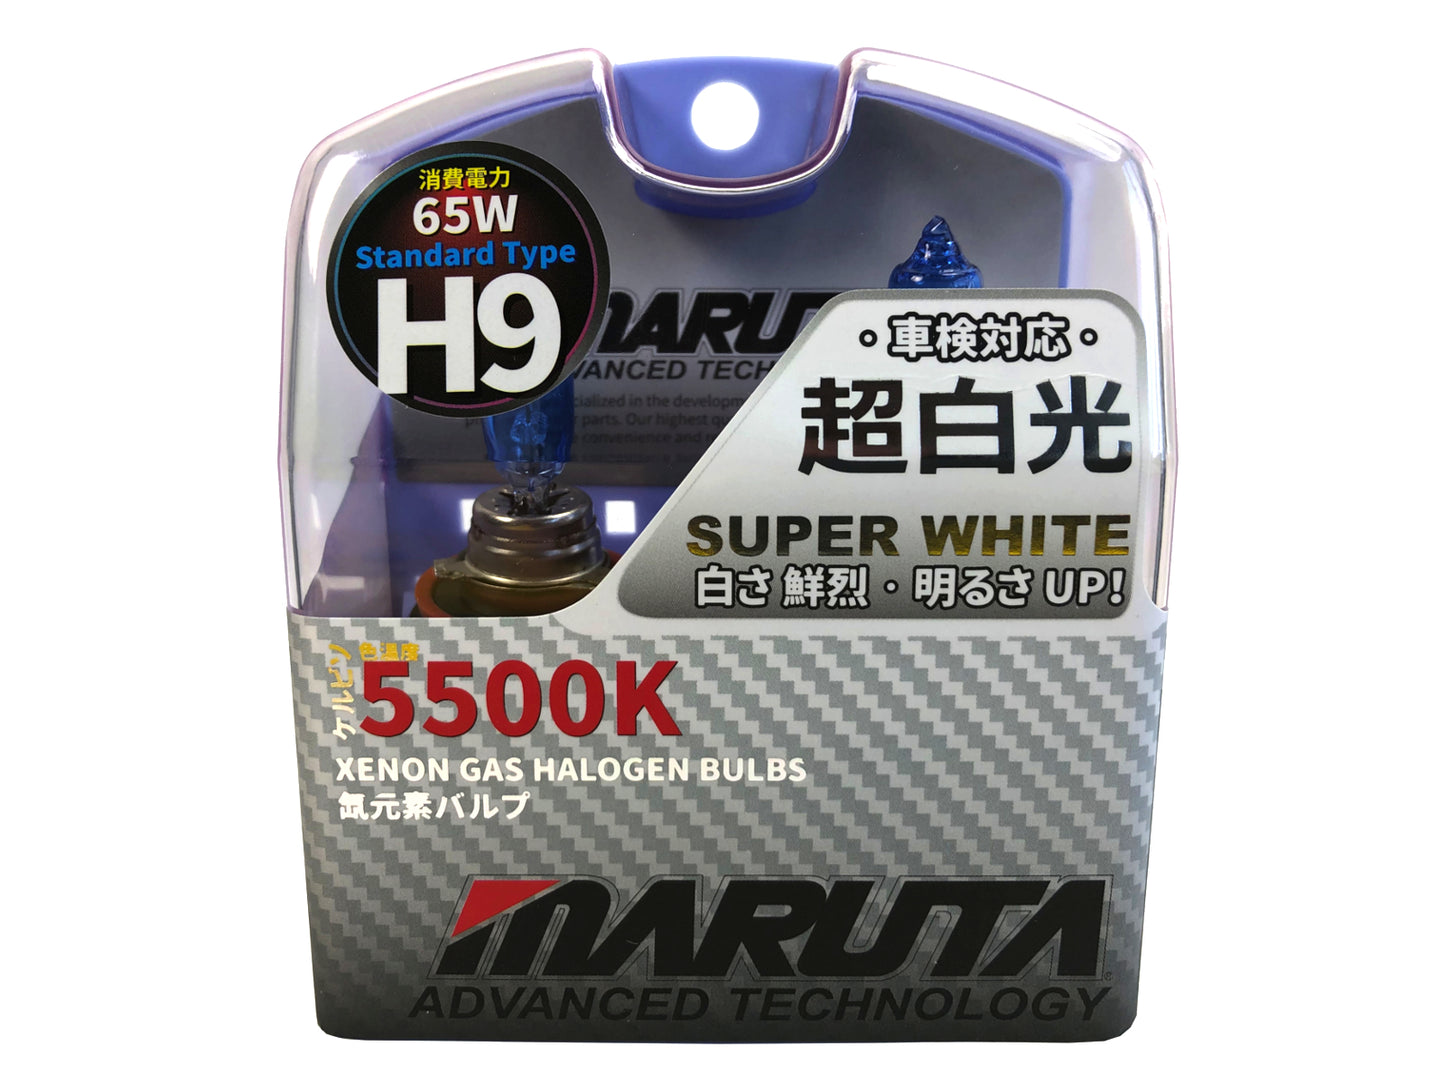 MARUTA SUPER WHITE H9 12V 65W Halogenlampe für Scheinwerfer, Fern-, Nebel-, Tagfahrlicht, 5500K Xenon-Effekt, langlebige Xenon-Gas Birne mit hochwertigem Quarzglas & Straßenzulassung (ECE Prüfzeichen) - Bild 1